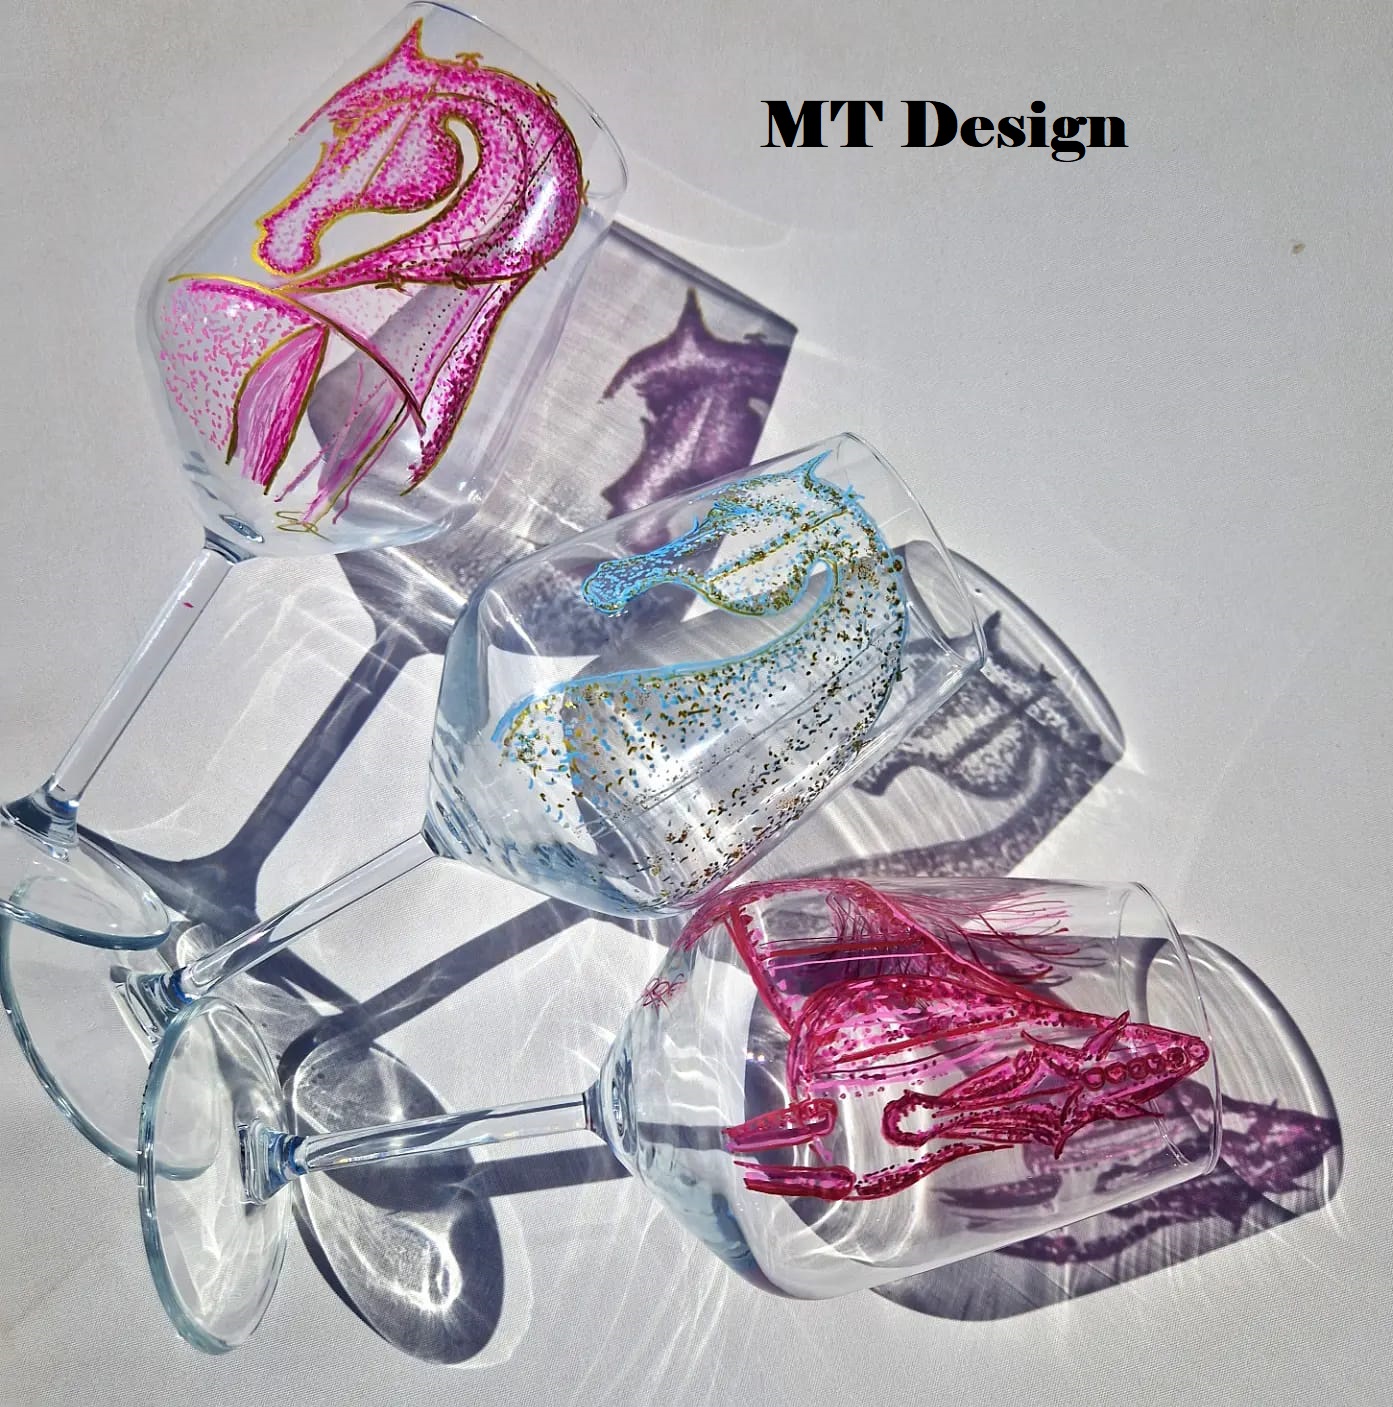 MT Design